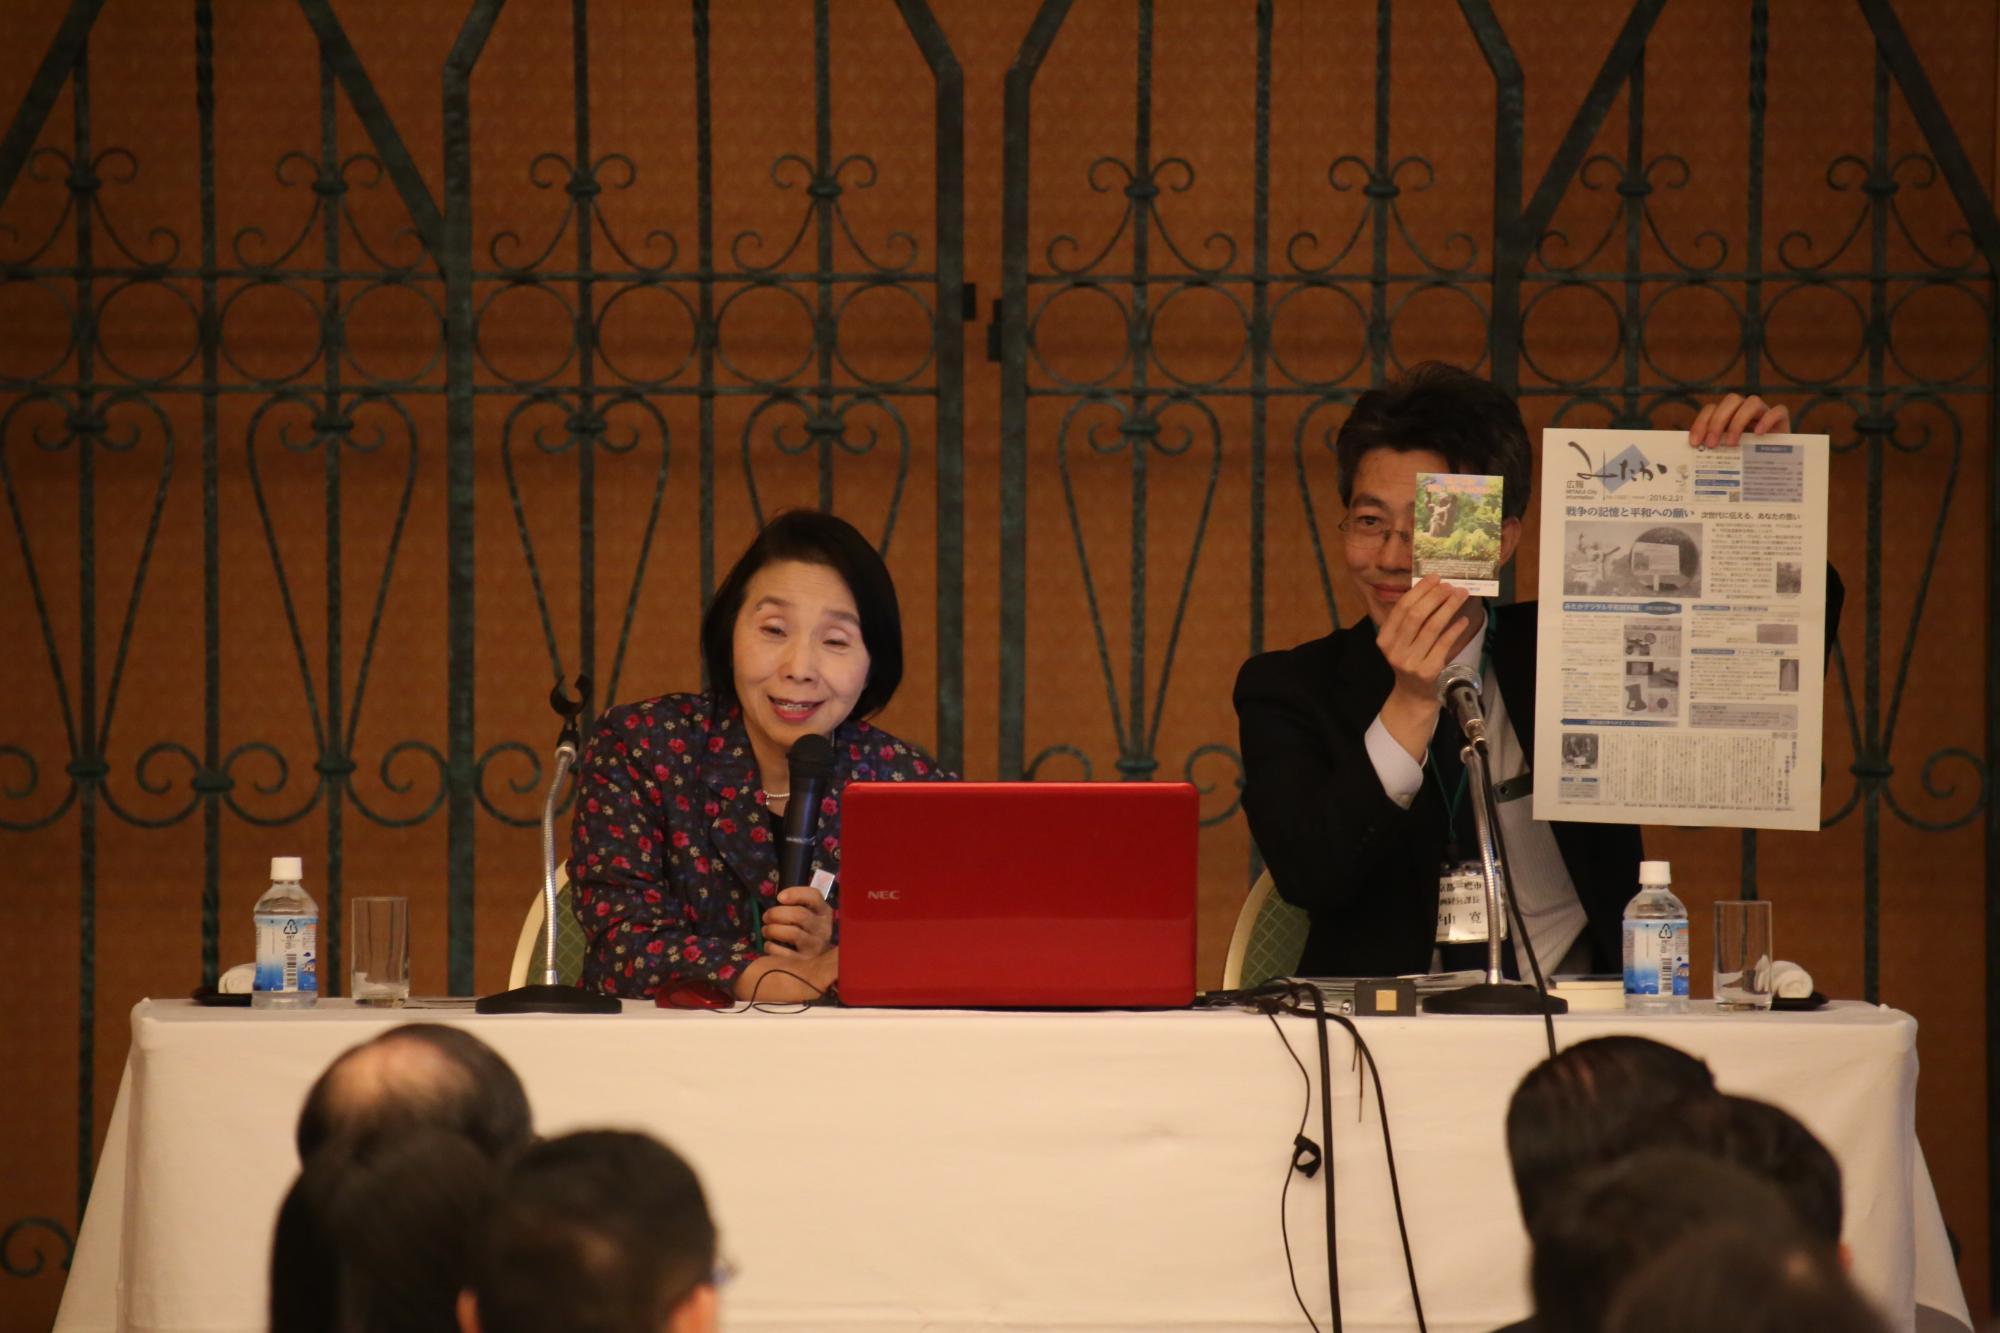 マイクを持って話をする清原慶子三鷹市長と、その横で資料を持っている男性の写真